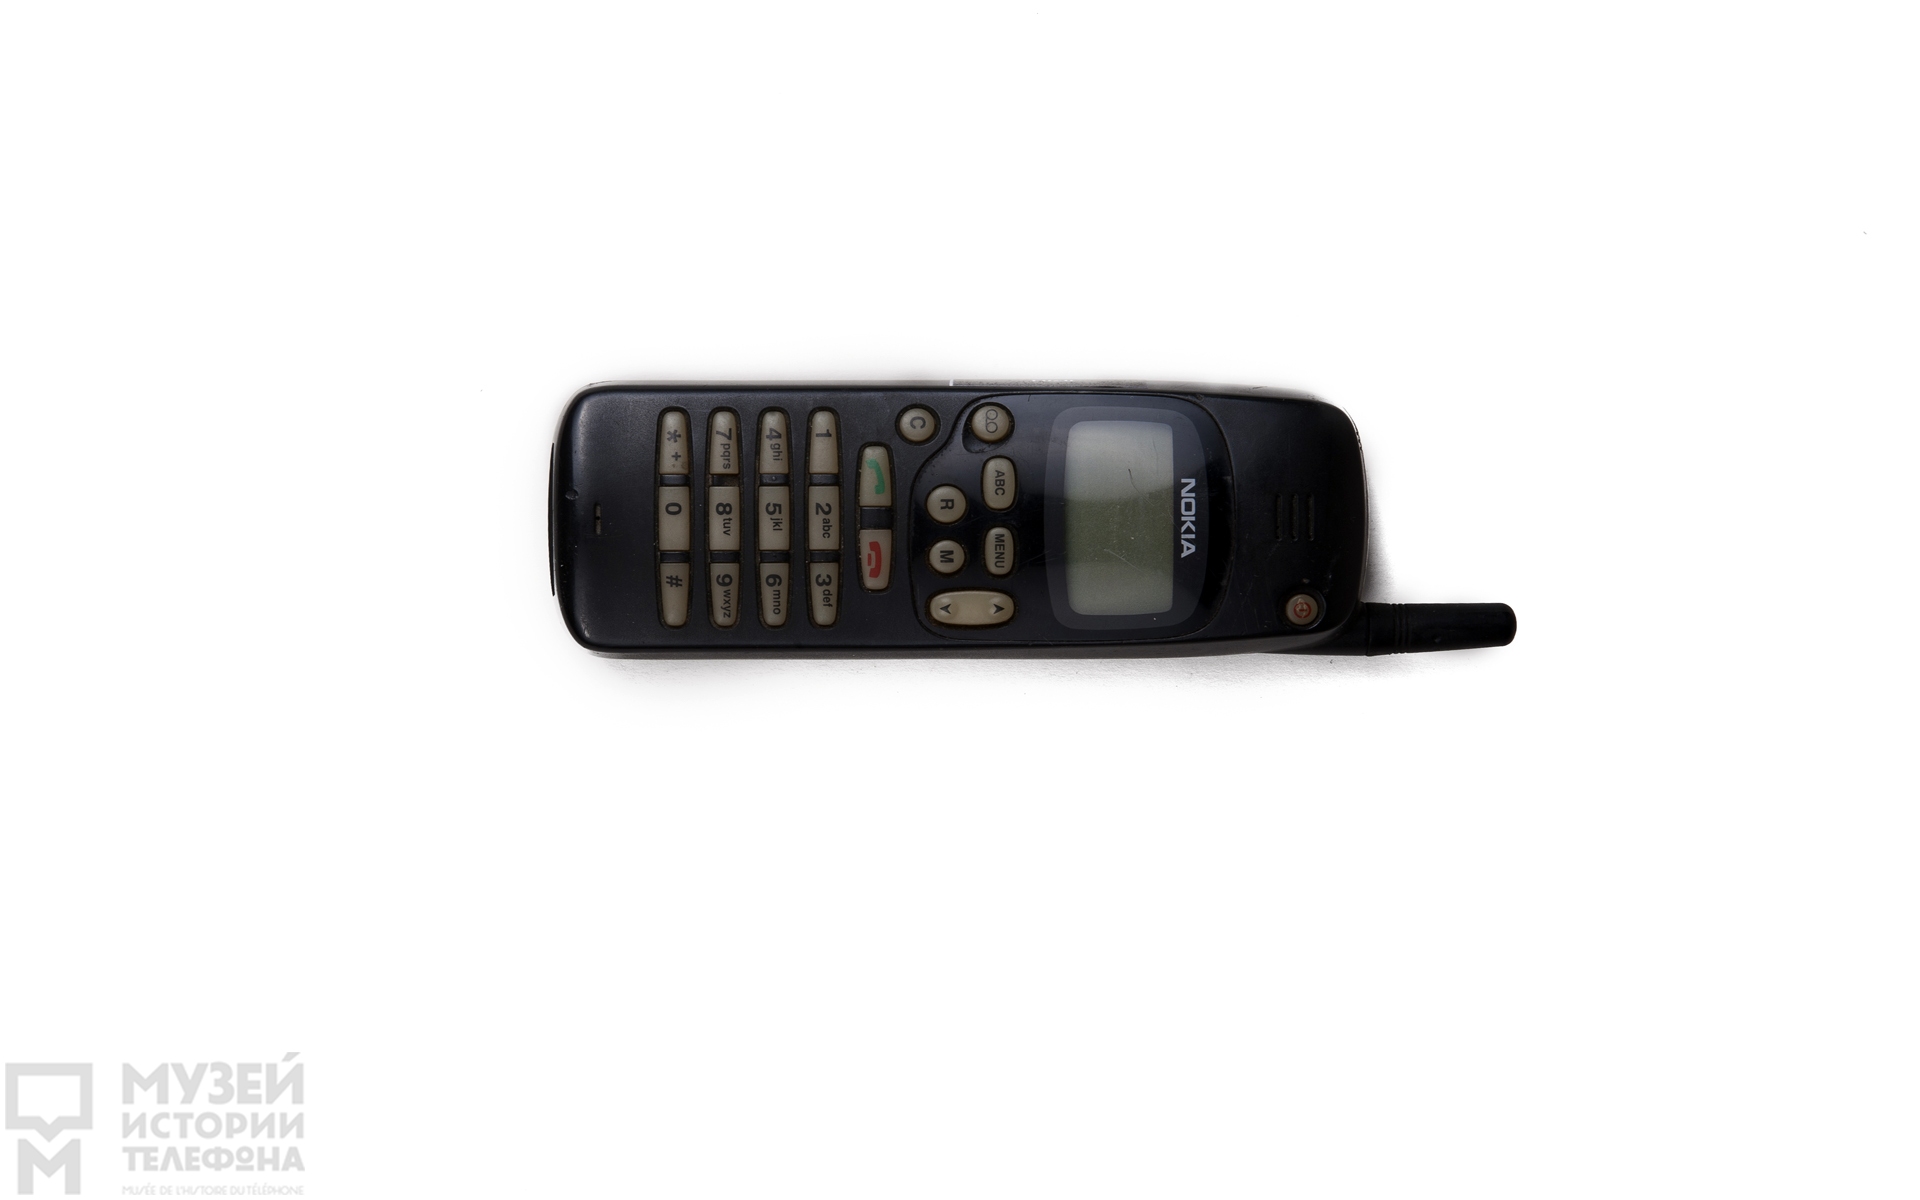 Сотовый телефон Nokia 1610